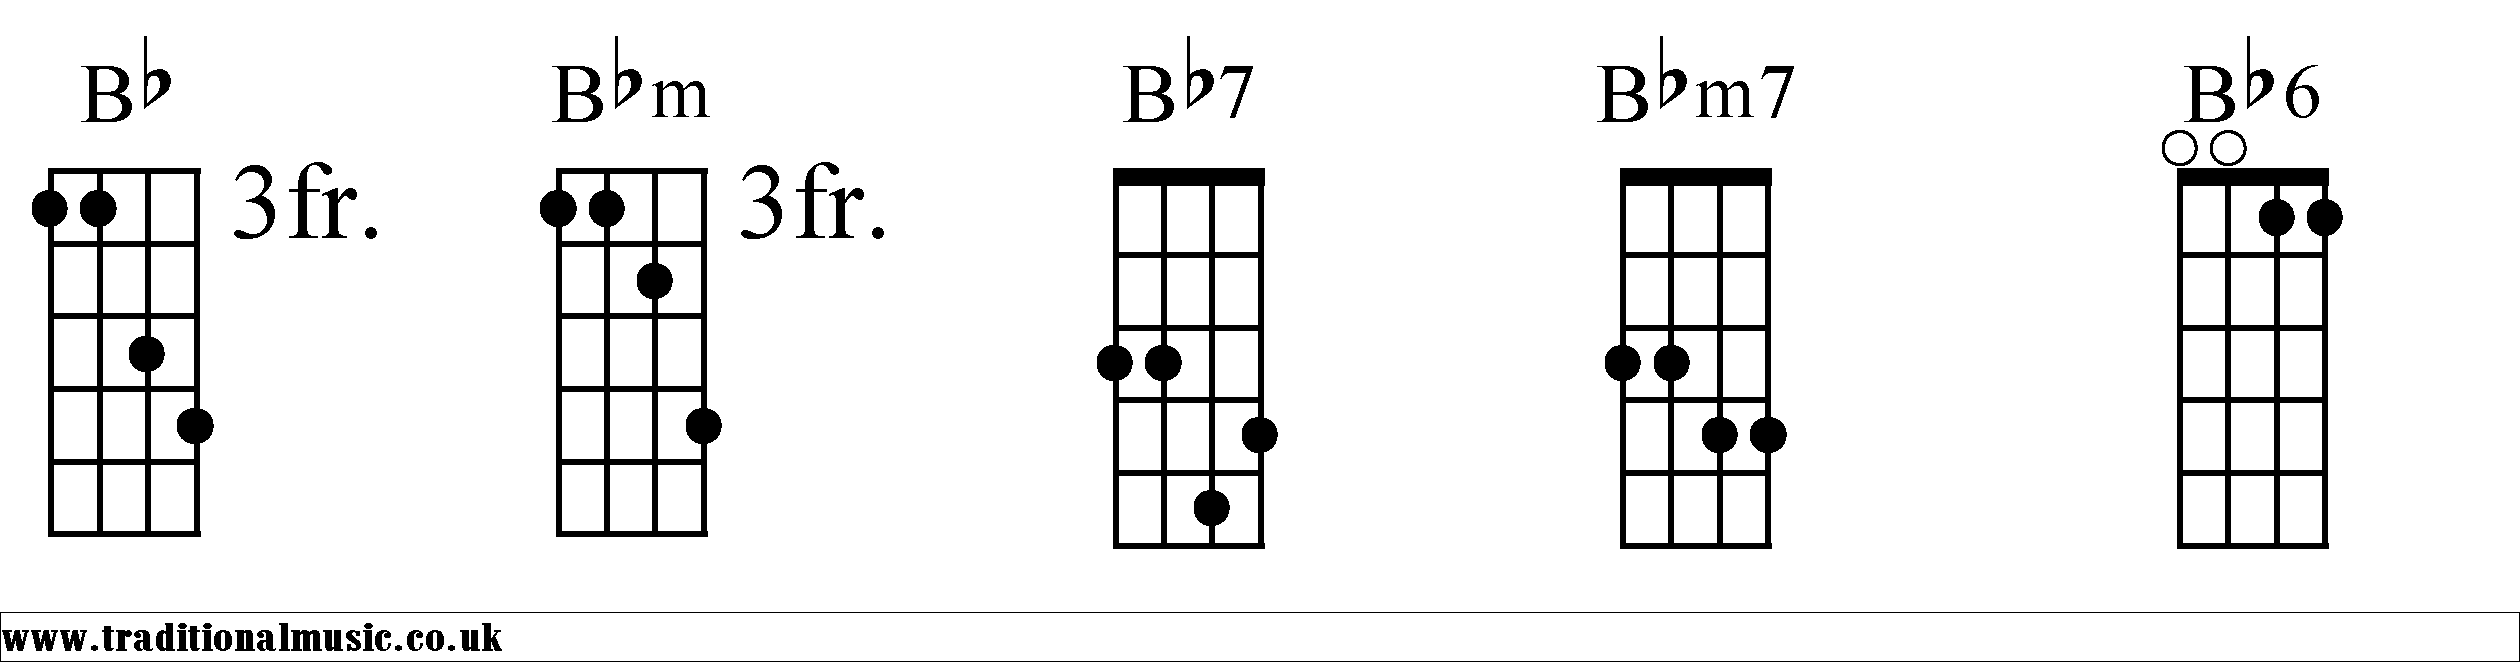 Bb Chords diagrams Mandolin 1